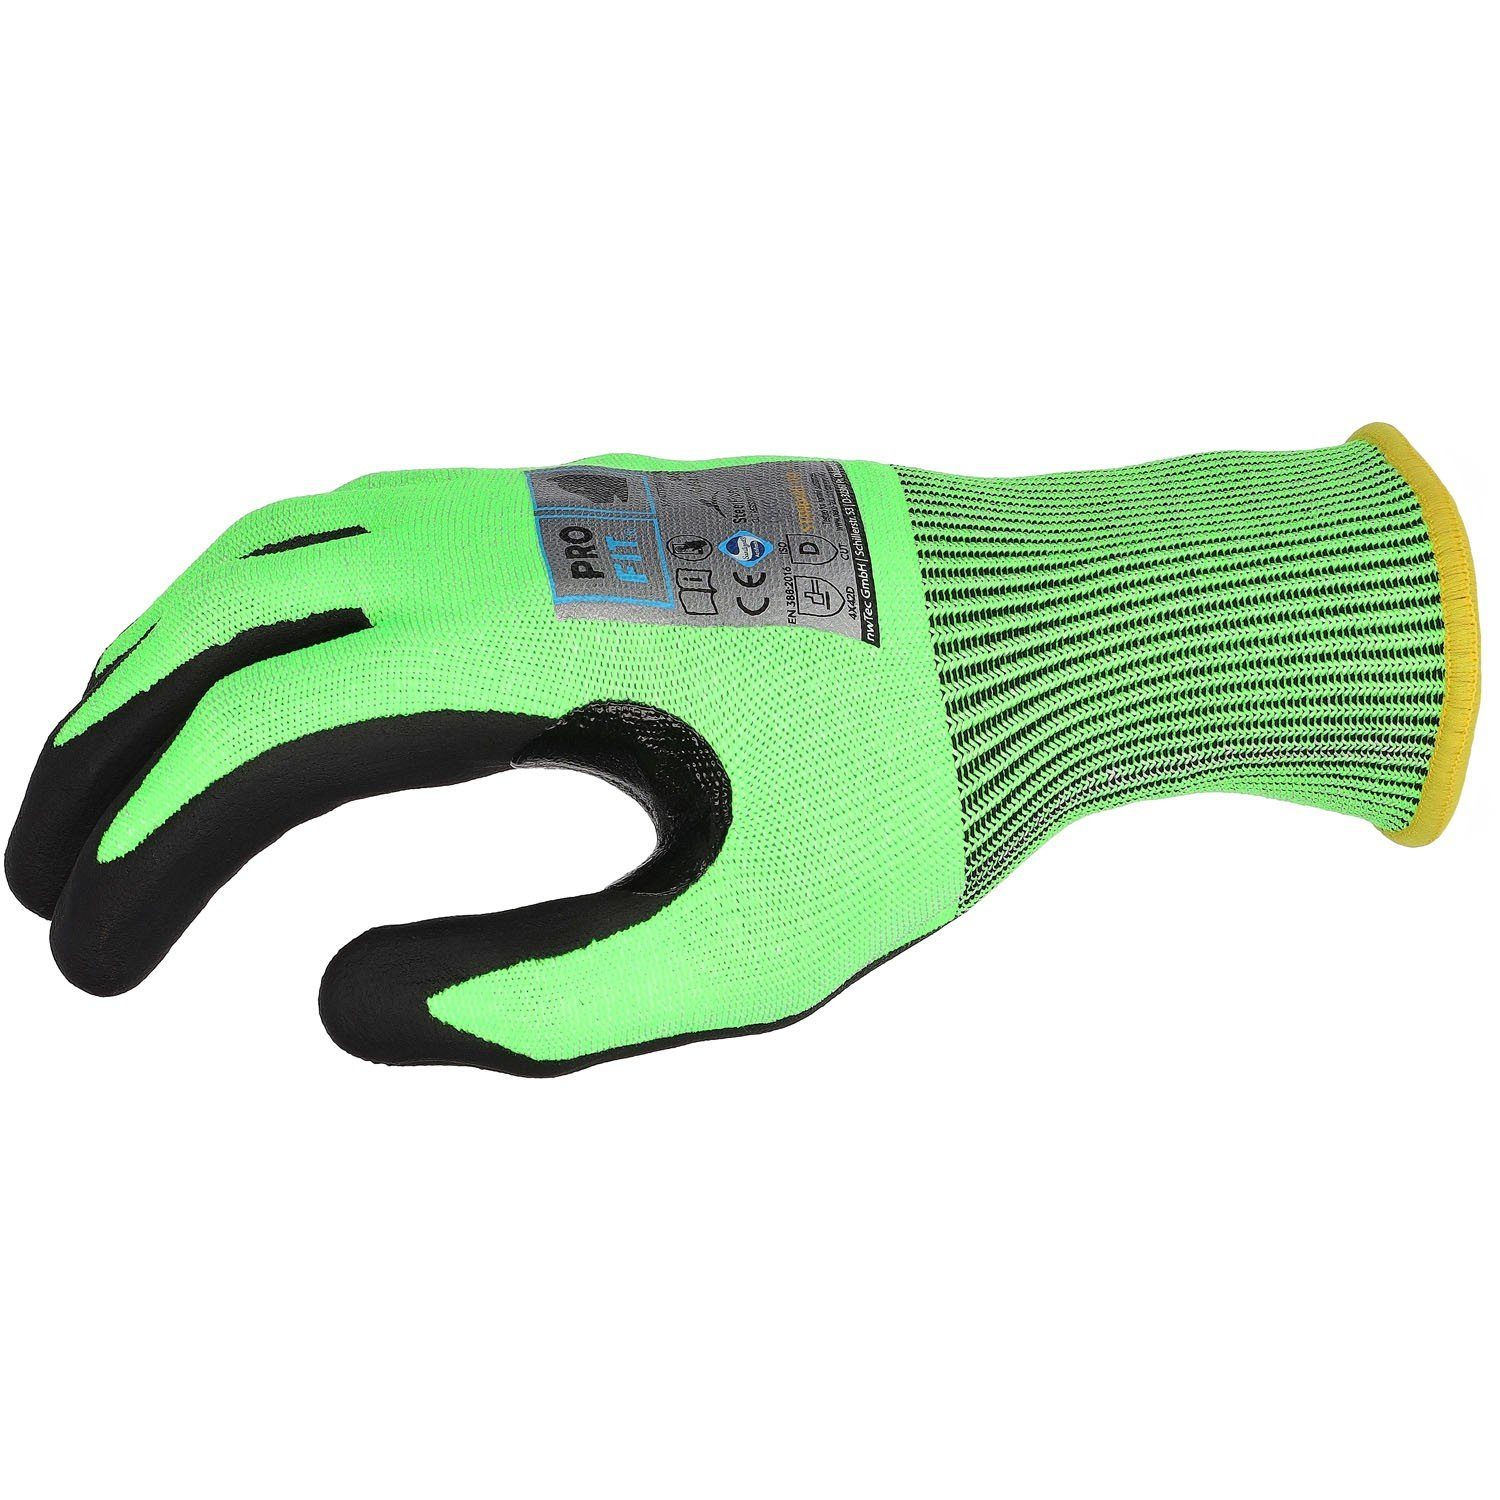 PRO Nitril-Schnittschutzhandschuh, by D, Level Fitzner FIT Paar) Daumenbeugenverstärkung Nitril-Handschuhe NEON (3,